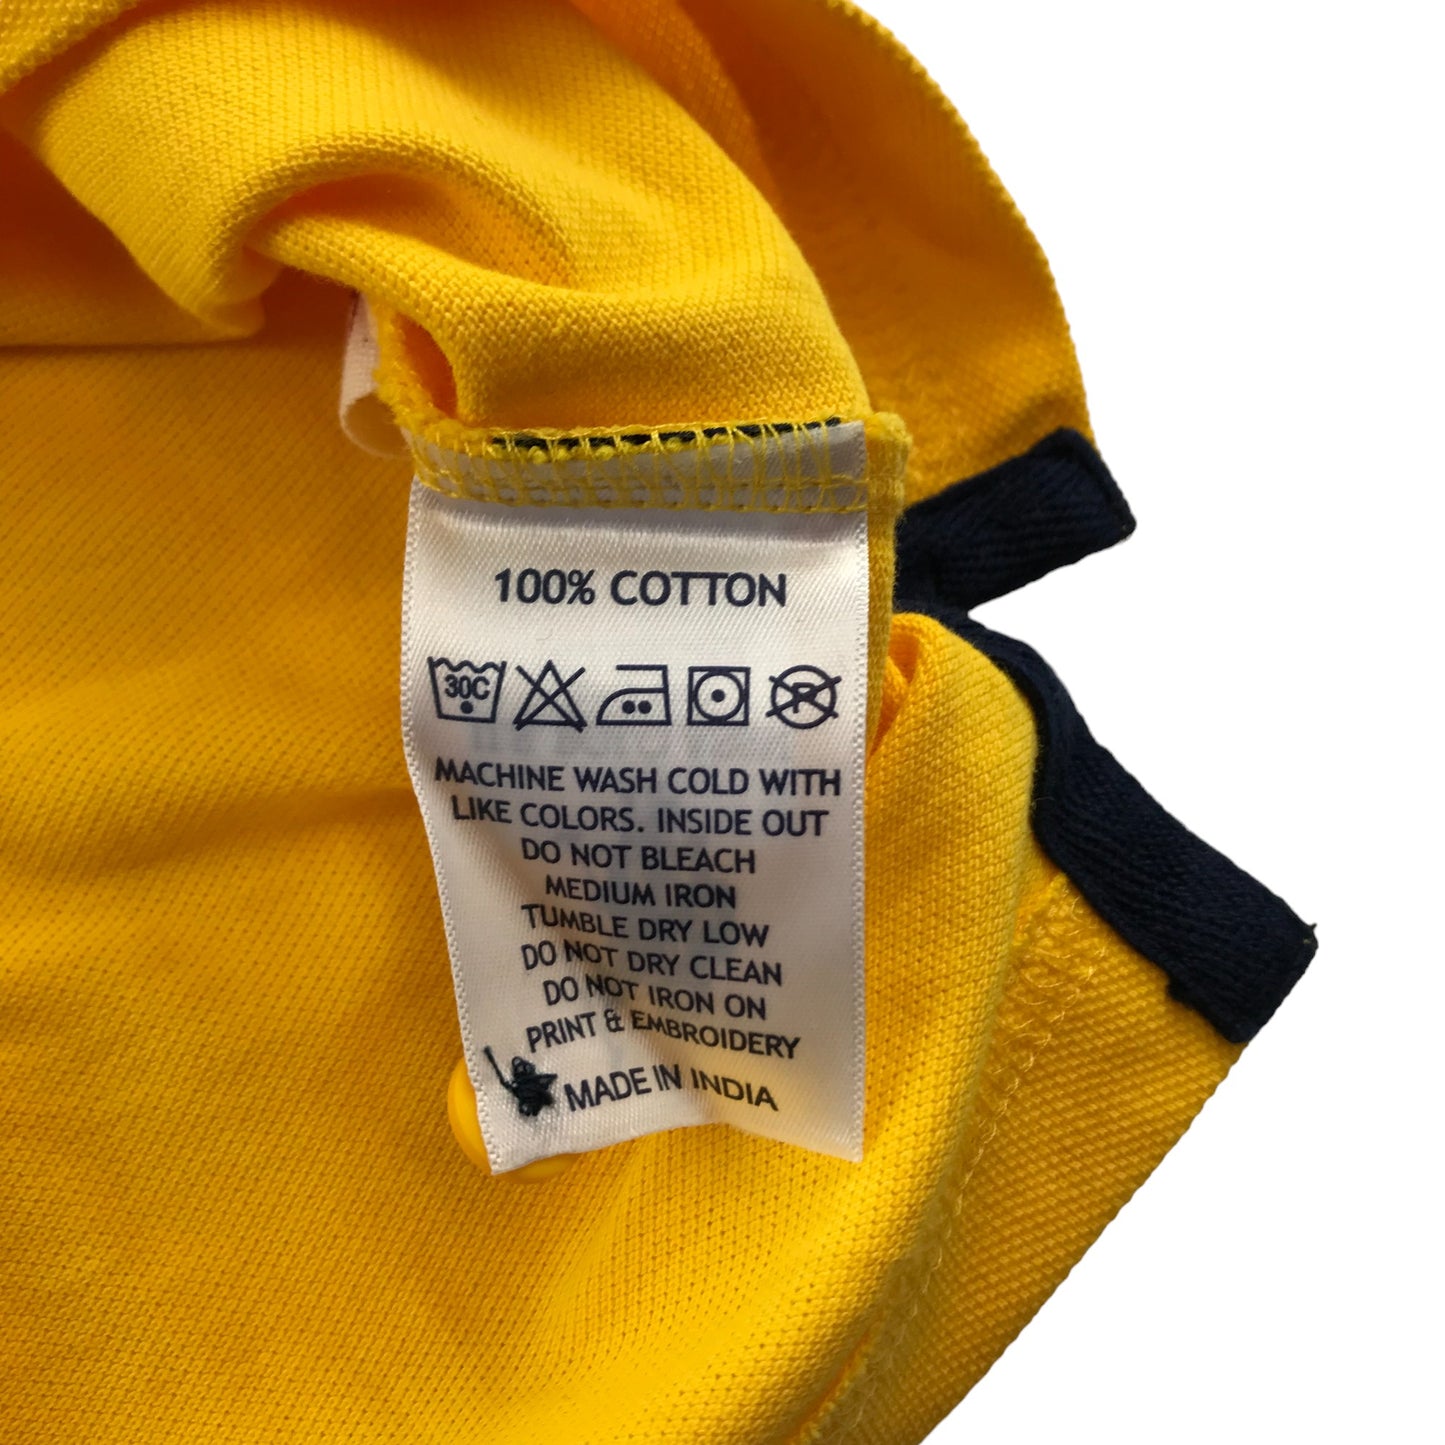 US Polo Assn Polo Shirt Age 14-16 Yellow Short Sleeve Cotton